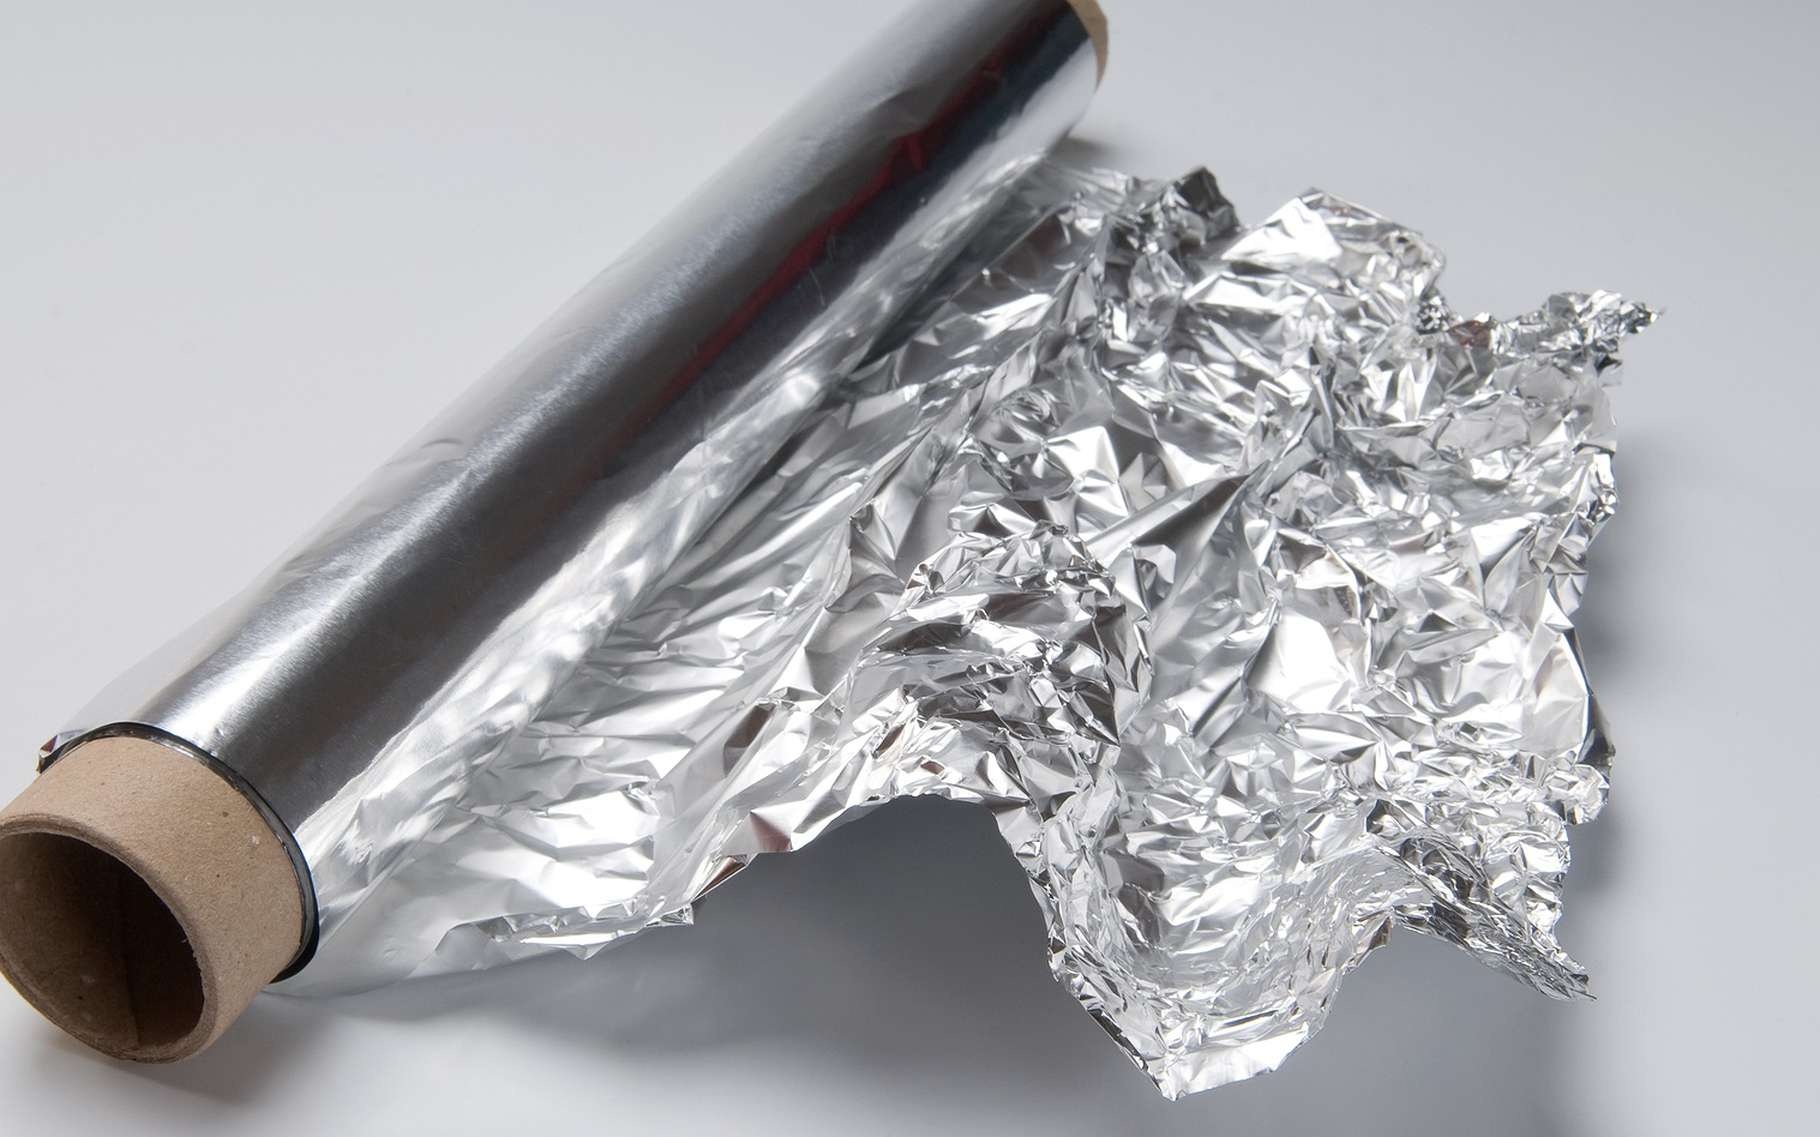 آشنایی با کاربردهای گسترده فلز آلومینیوم